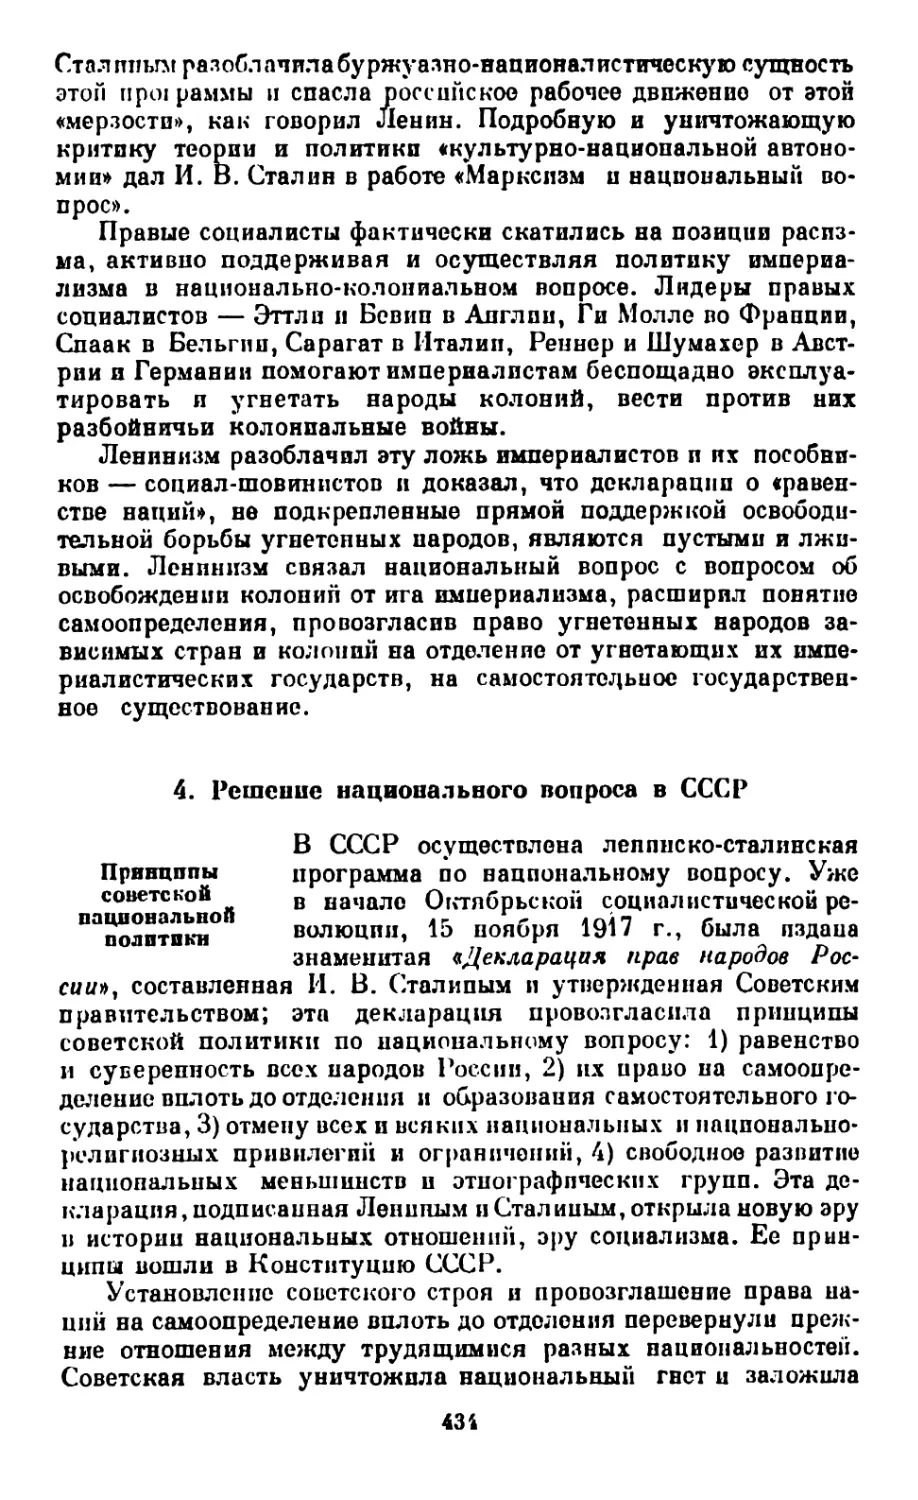 4. Решение национального вопроса в СССР